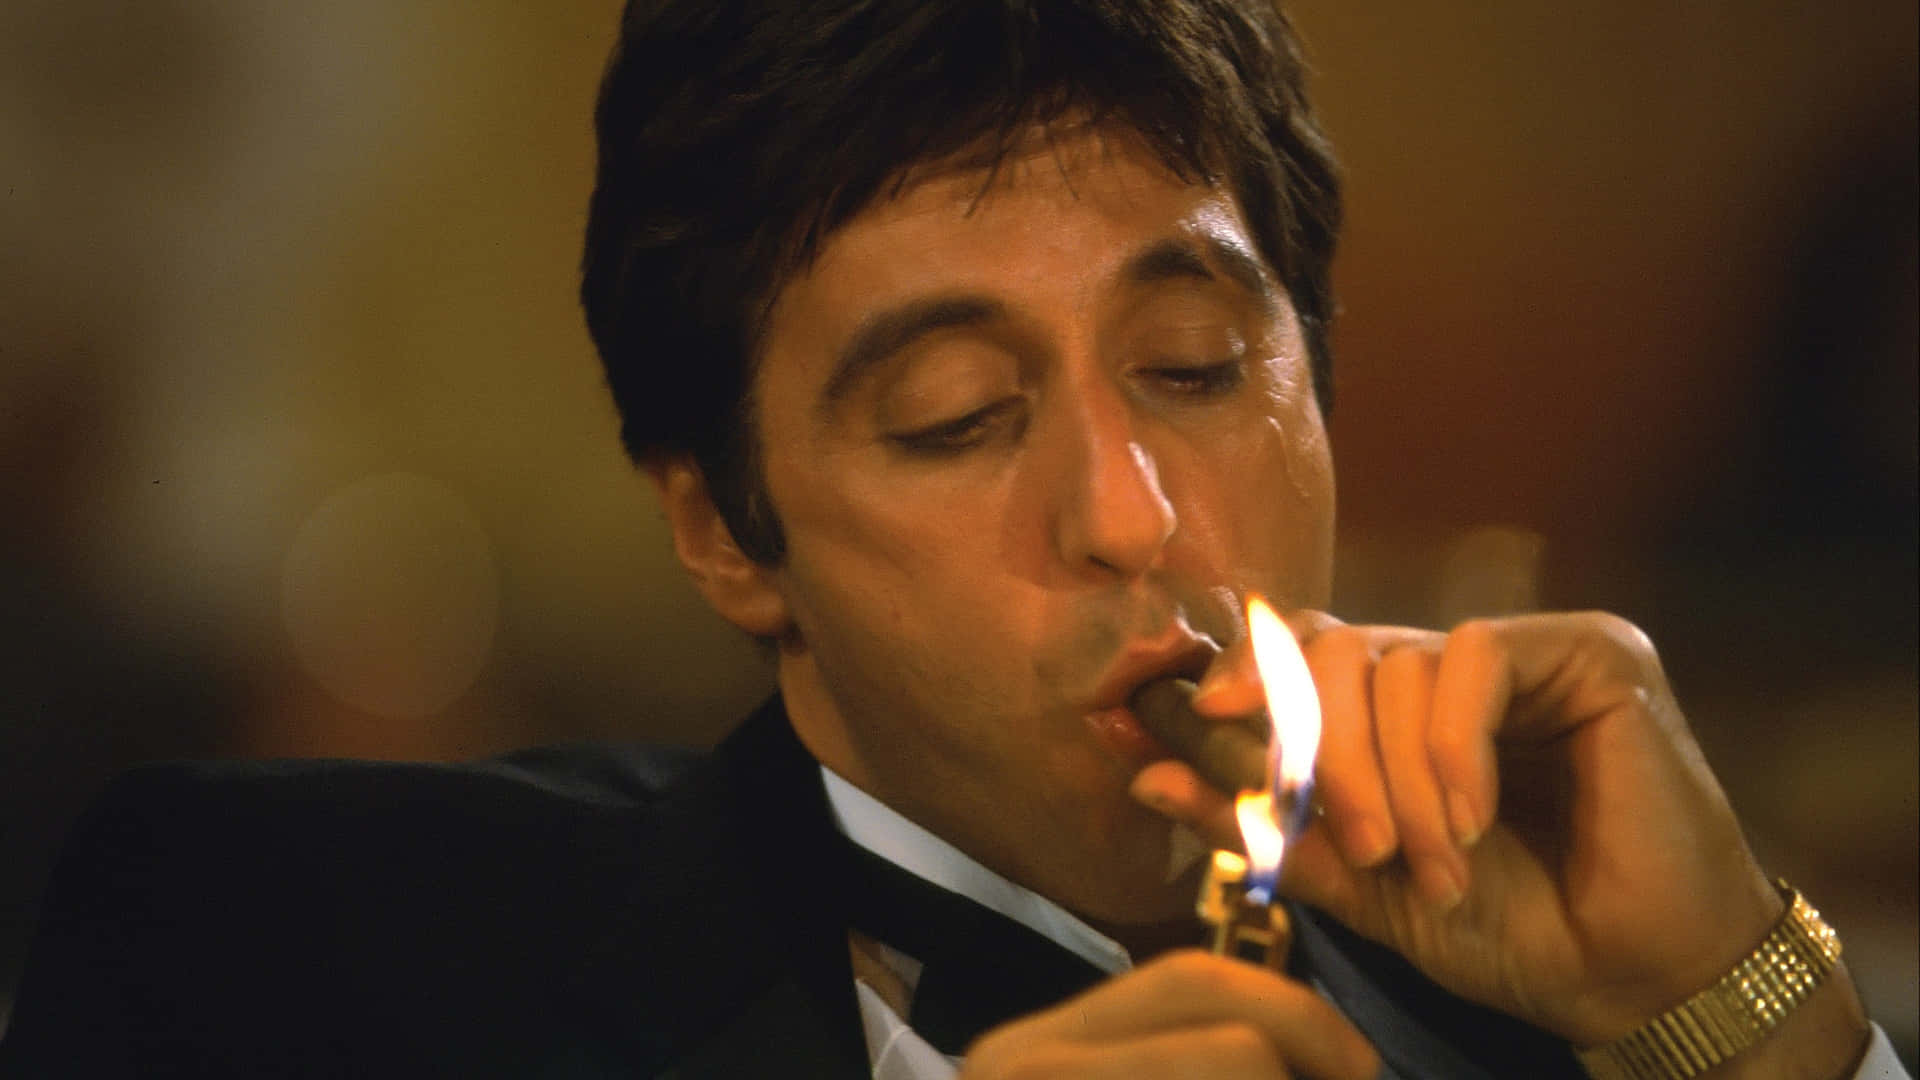 Imagendel Actor Al Pacino En El Padrino